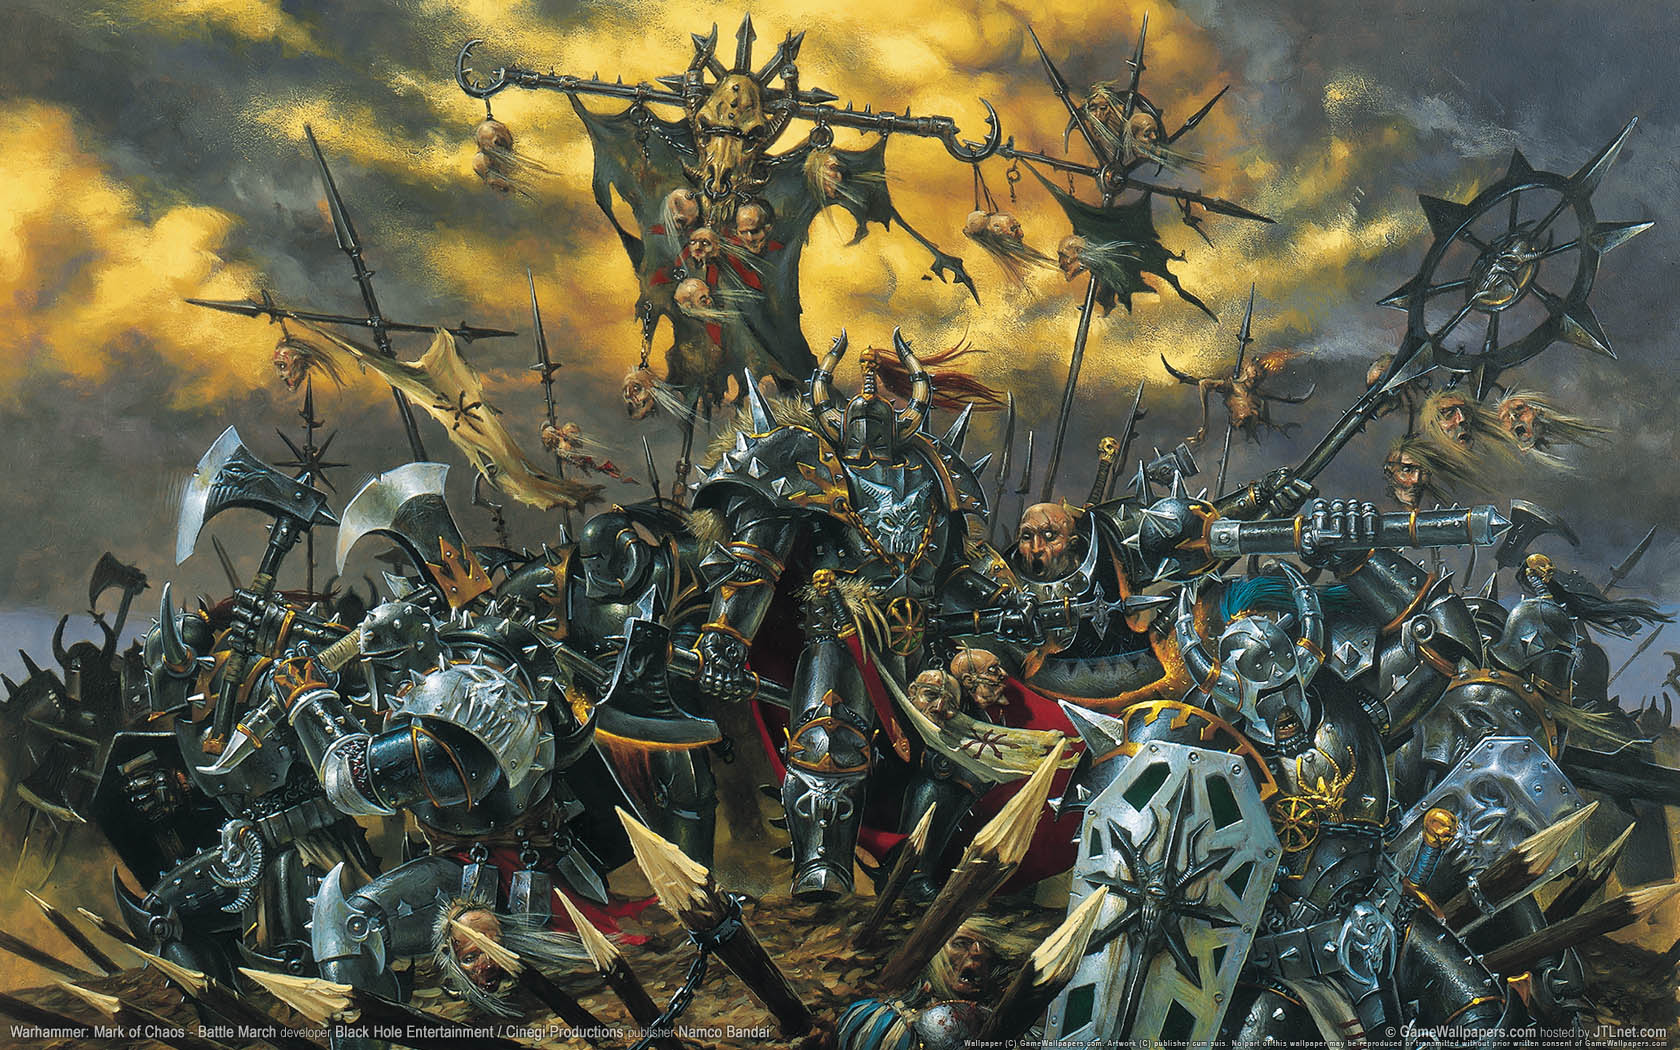 Warhammer: Mark of Chaos - Battle March fond d'cran 01 1680x1050